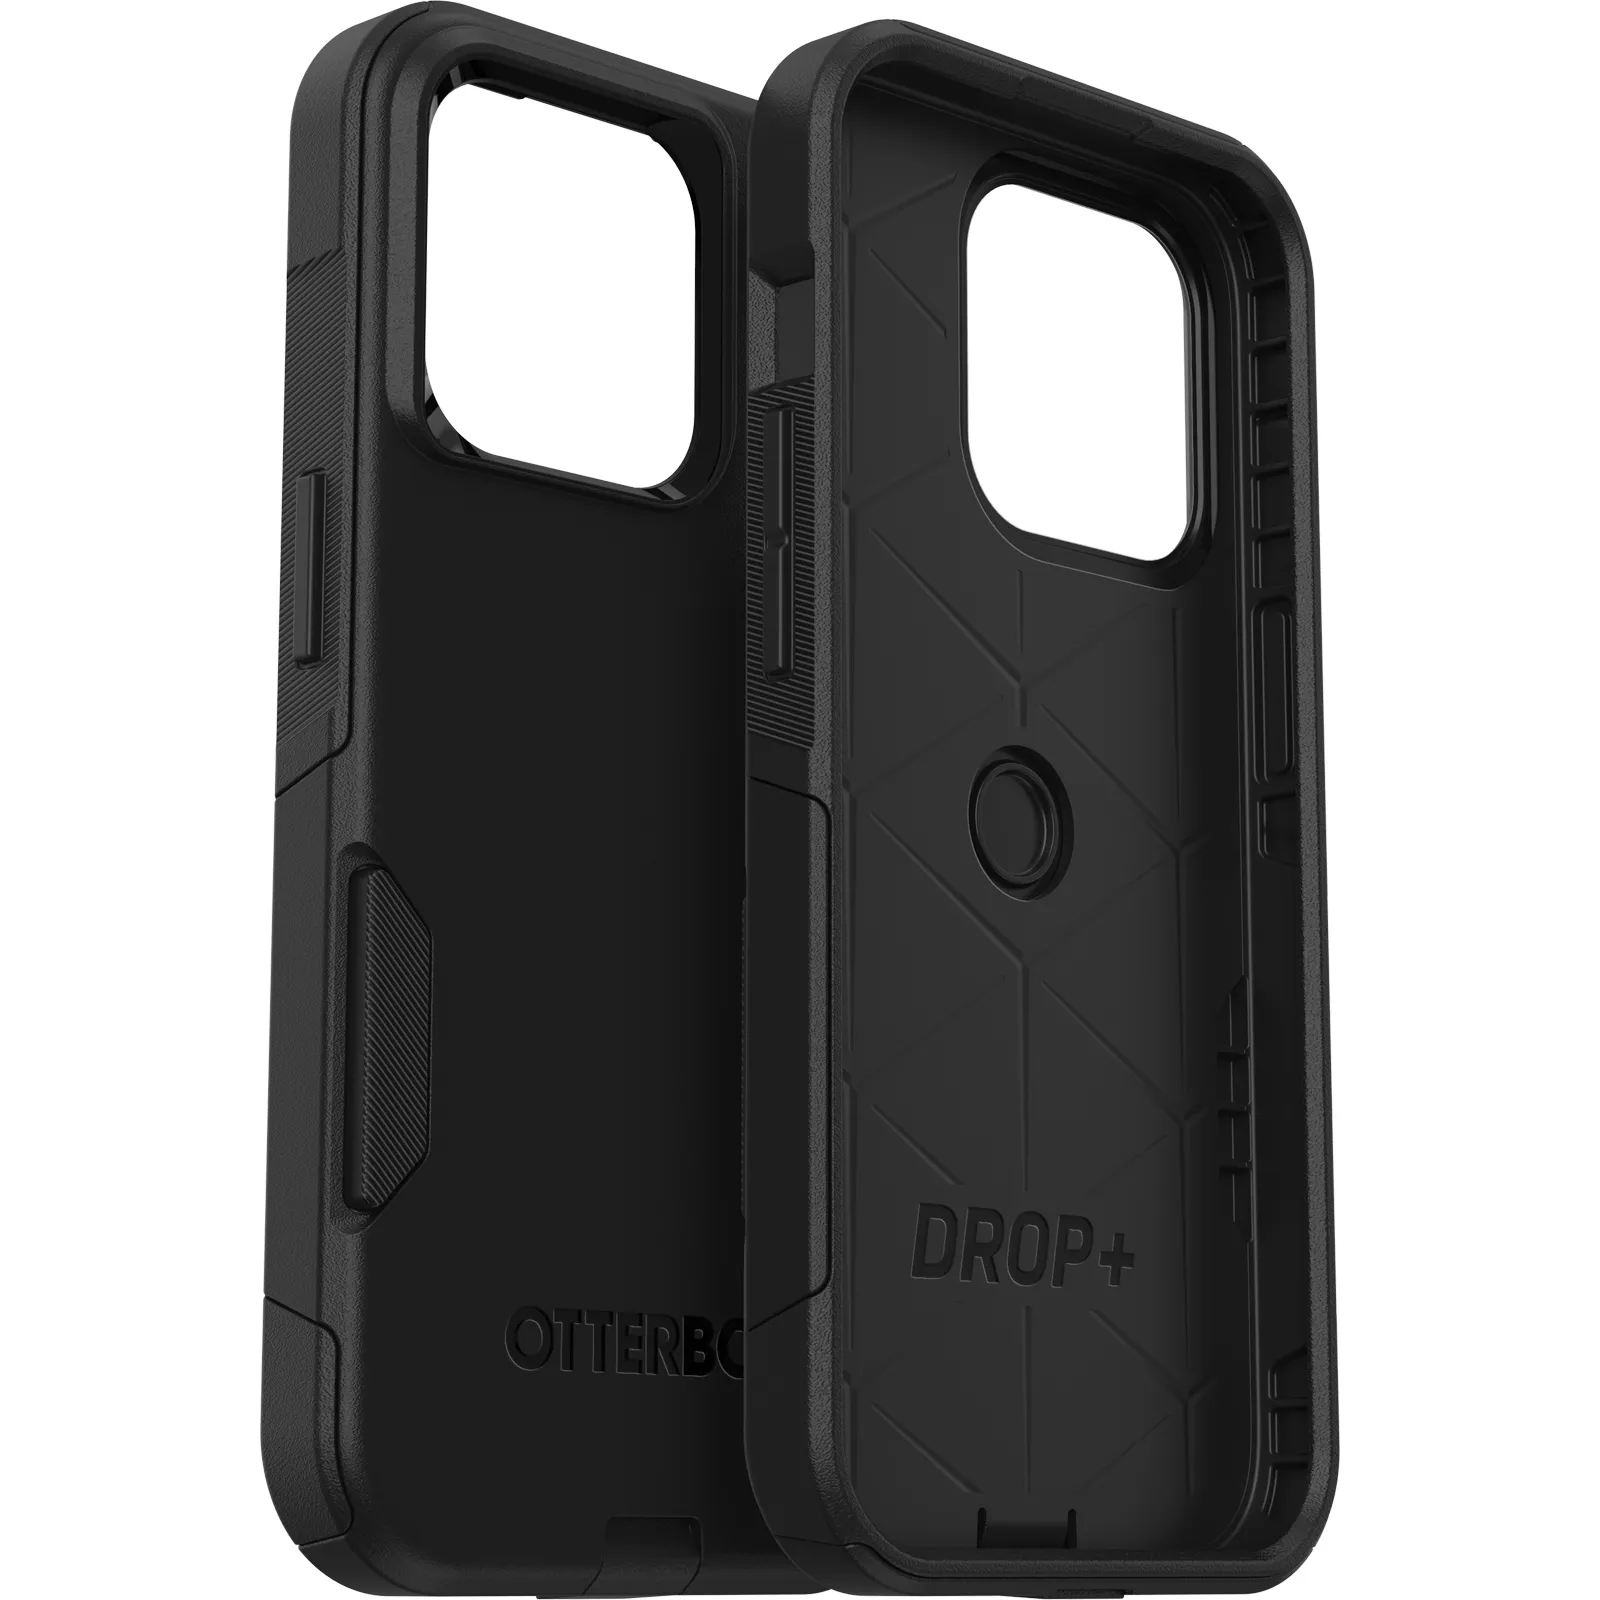 OtterBox รุ่น Commuter - เคส iPhone 14 Pro - สี Black